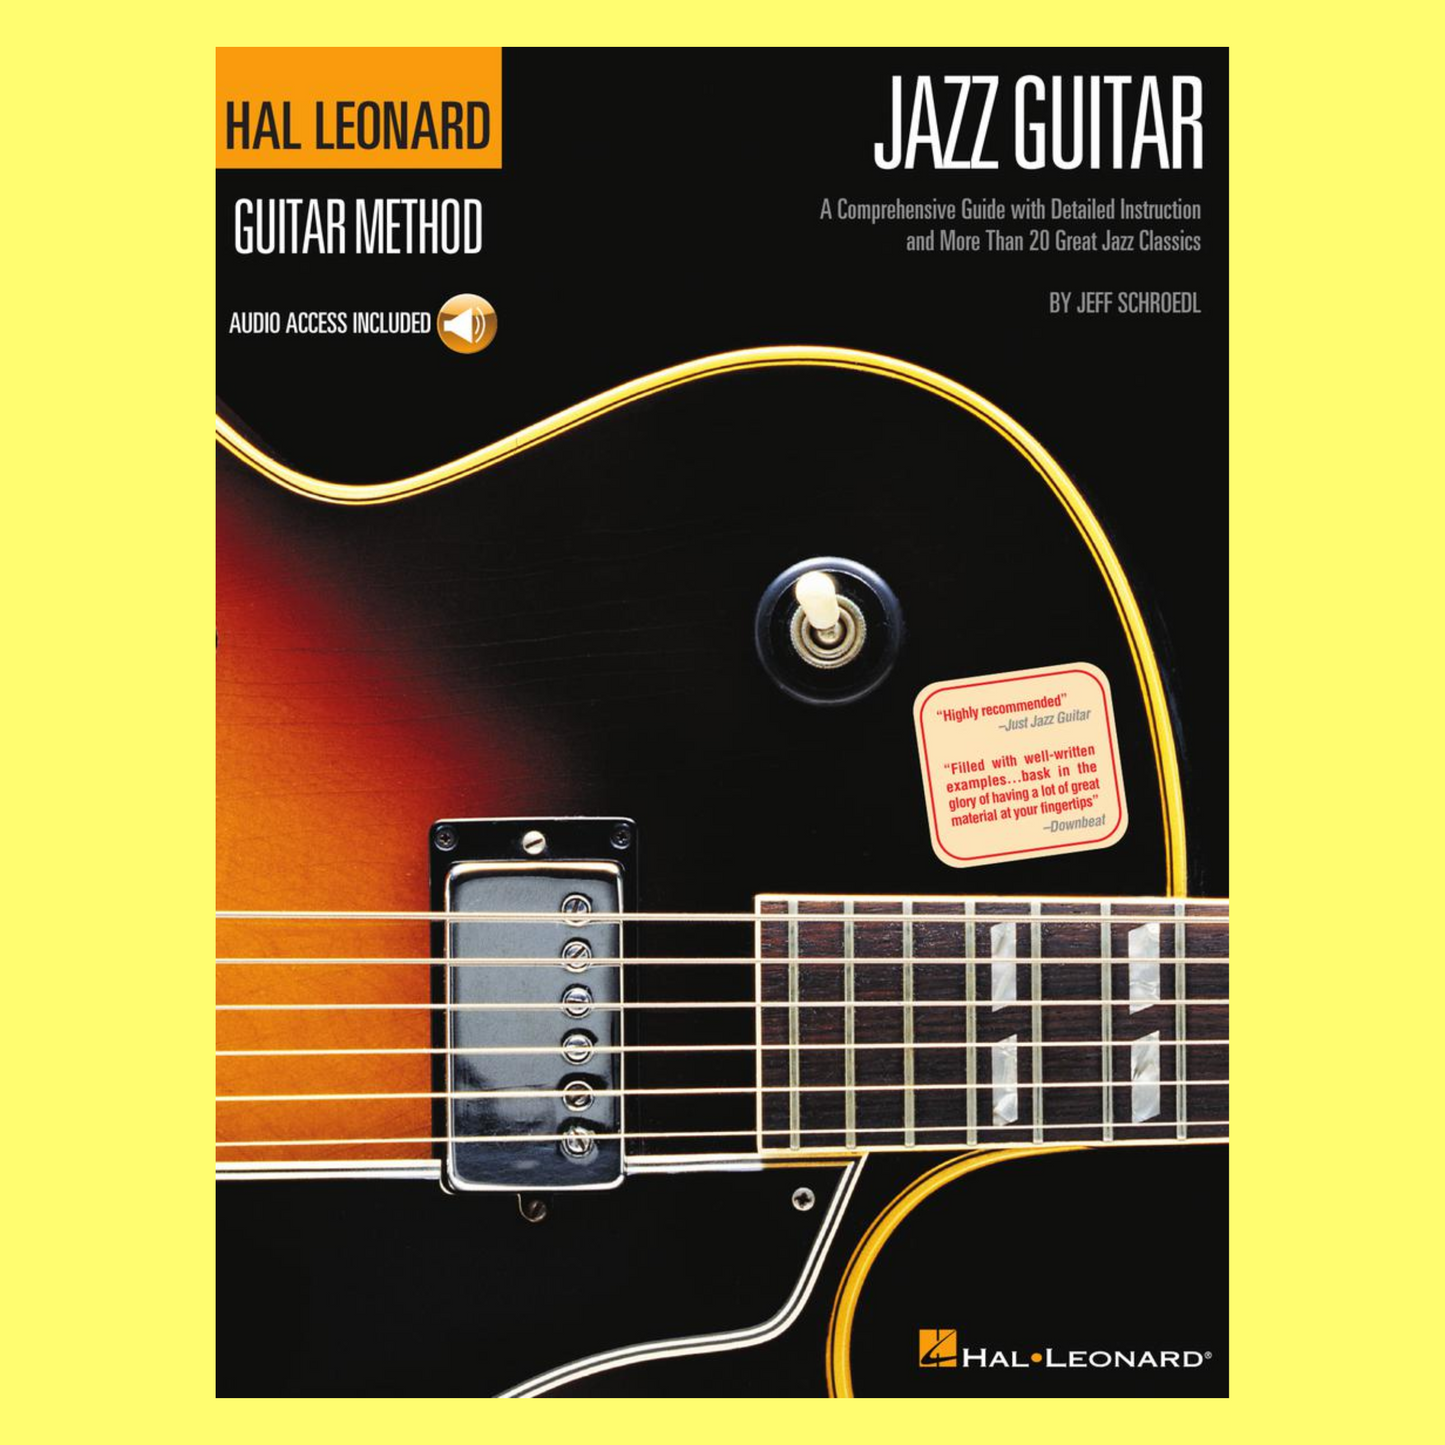 Hal Leonard Guitar Method - Jazz Guitar Book/Ola